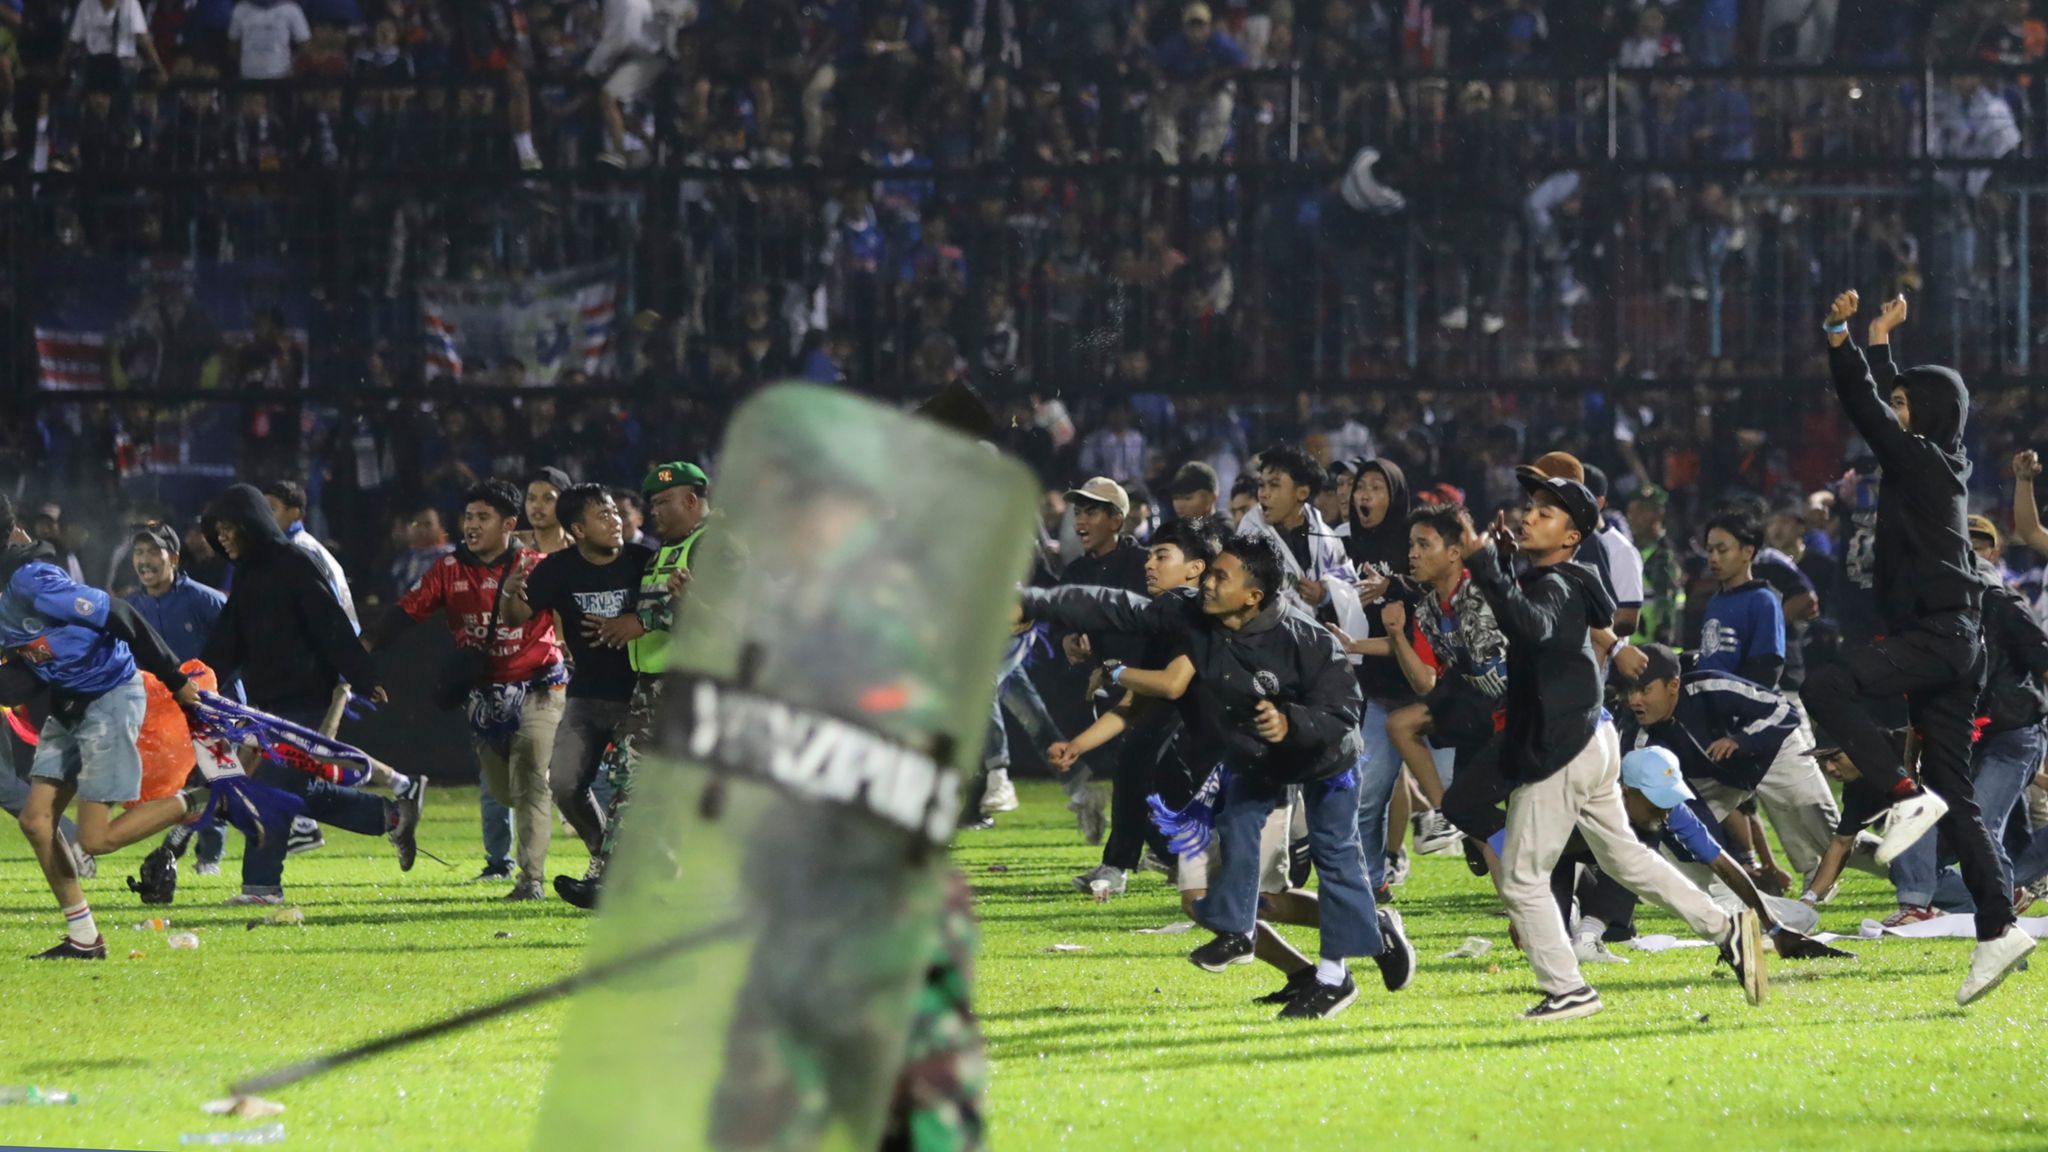 (ФОТО) В Индонезии более 120 человек погибли в ходе беспорядков после футбольного матча